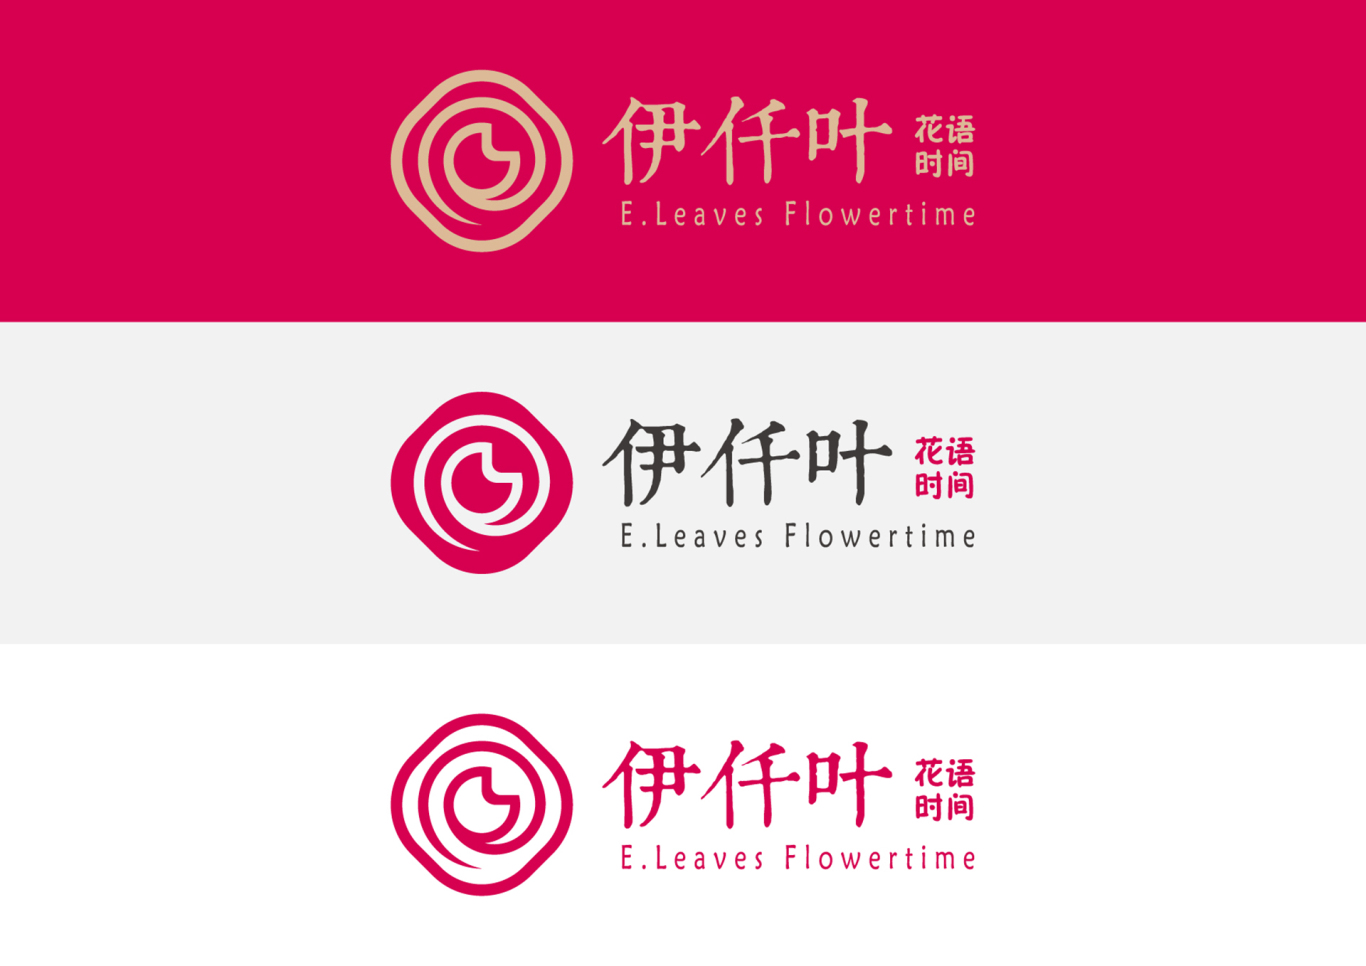 伊仟葉·花語時間(玫瑰鮮花餅)品牌形象設計圖4